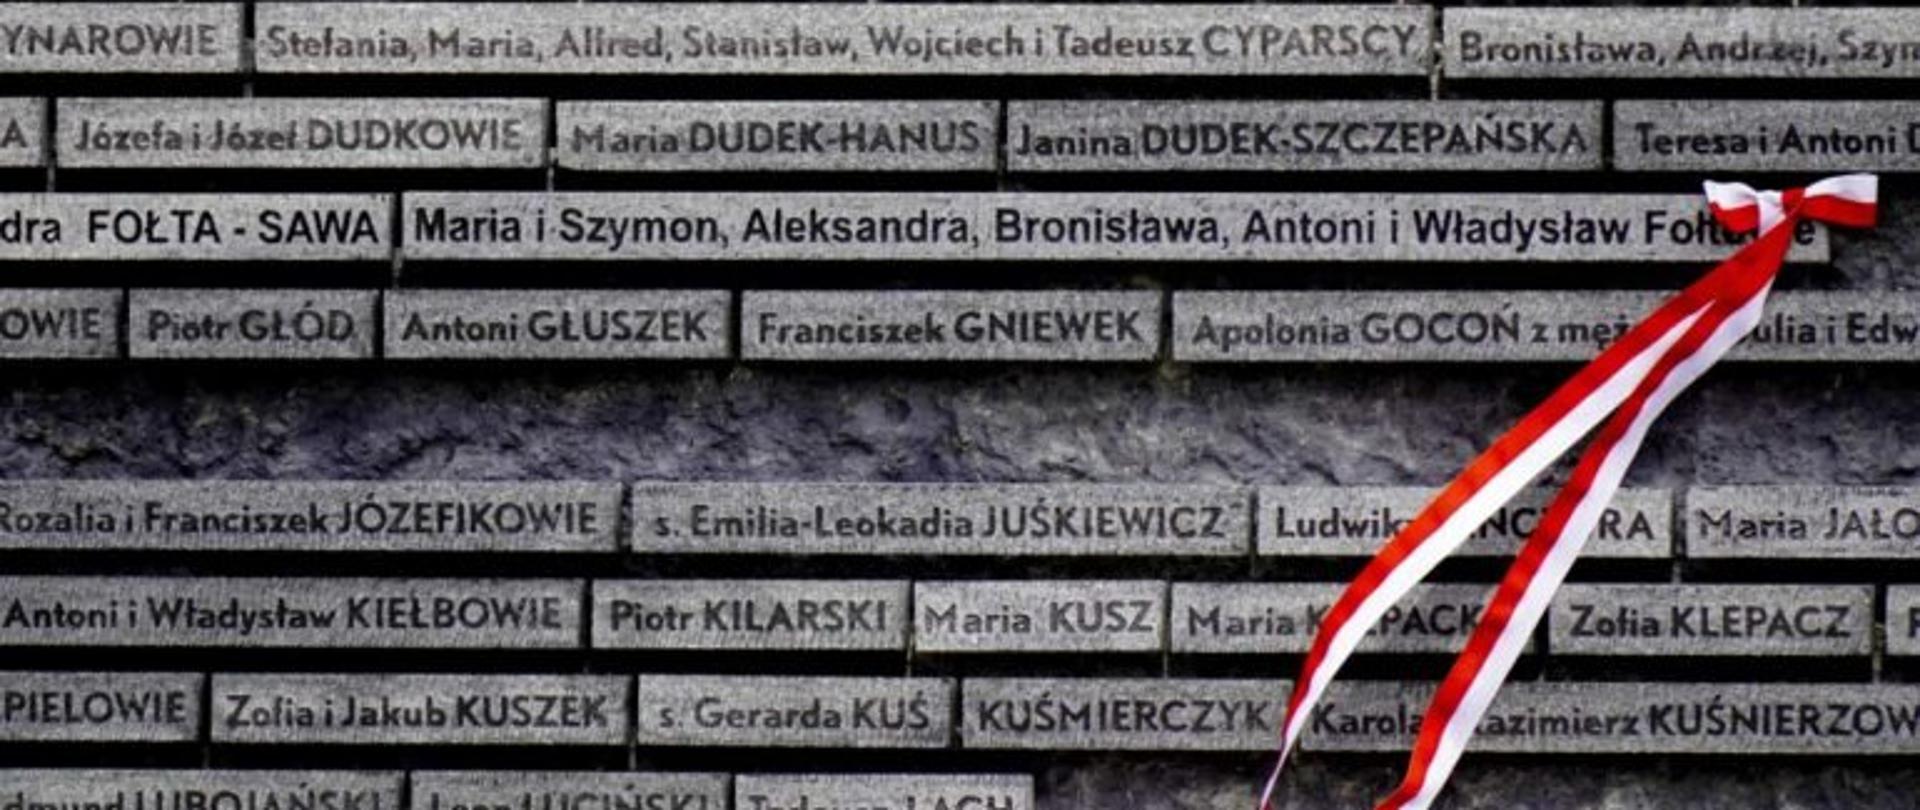  Dziś wspominamy ofiarę Polaków ratujących Żydów